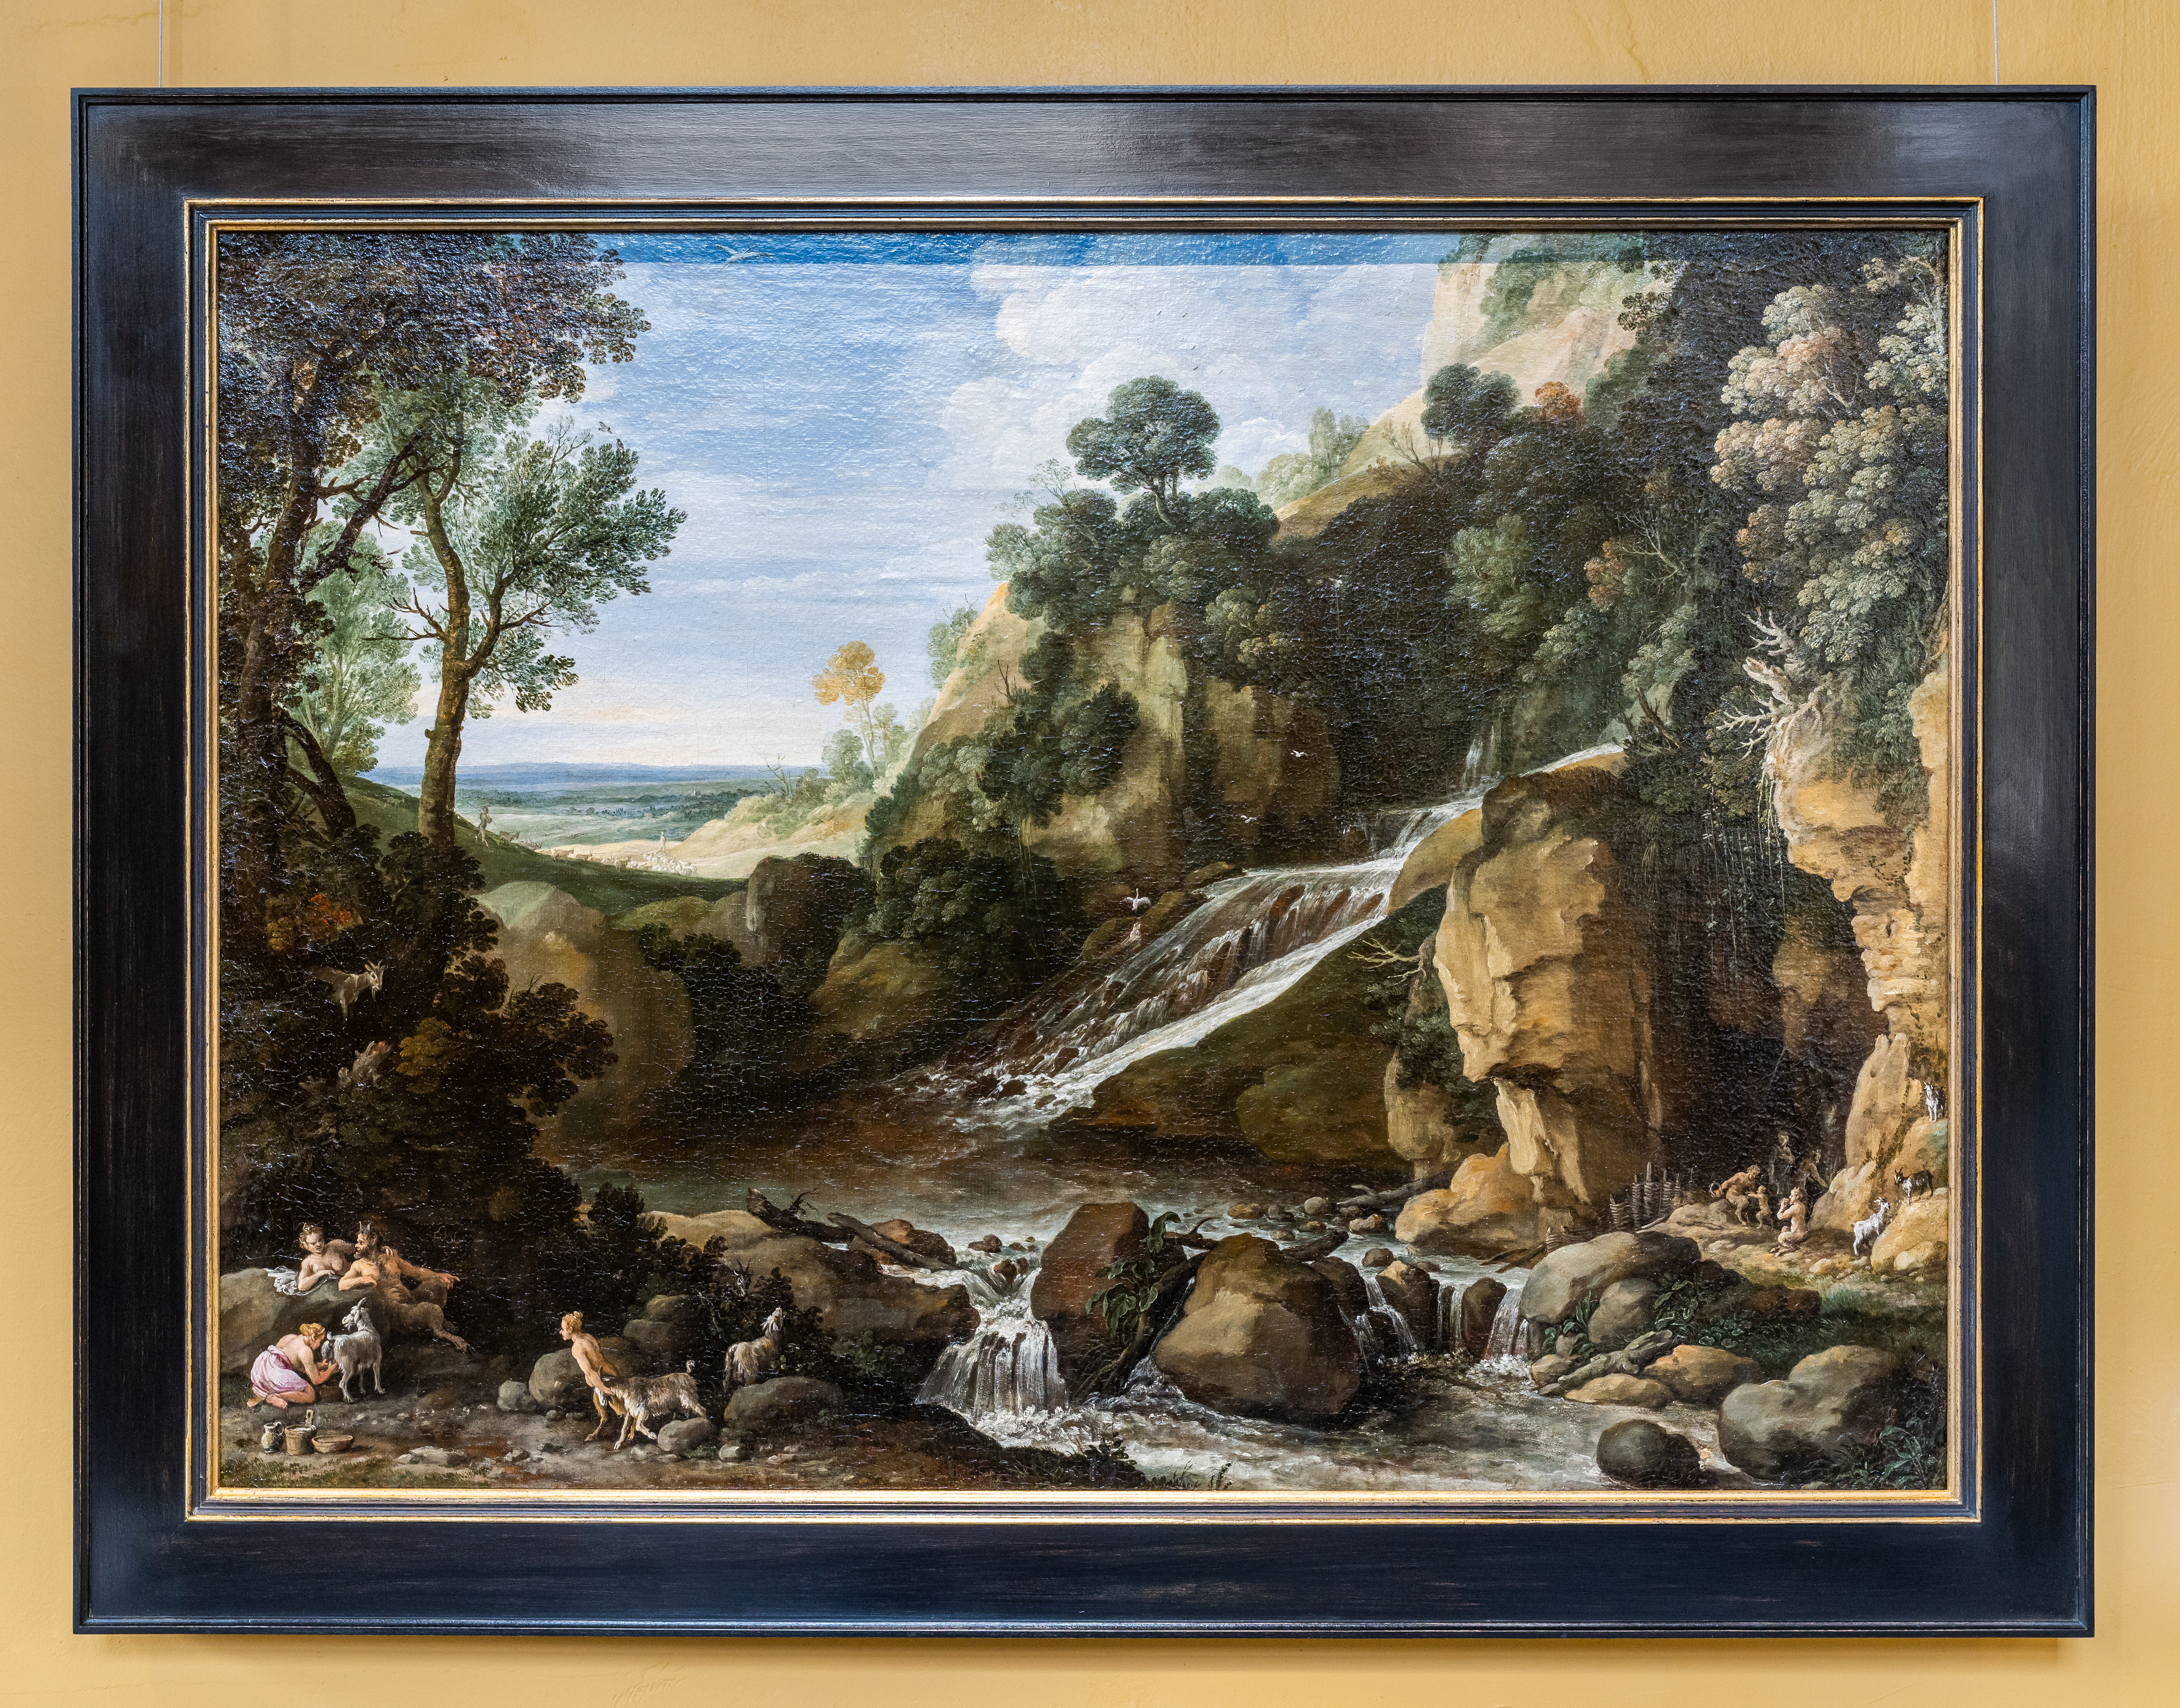 Paul Bril, Berglandschap met saters en geiten bij een waterval, ca. 1616-1619, Rubenshuis, olieverf op doek, 65 x 89 cm, publiek domein, Foto LUCID